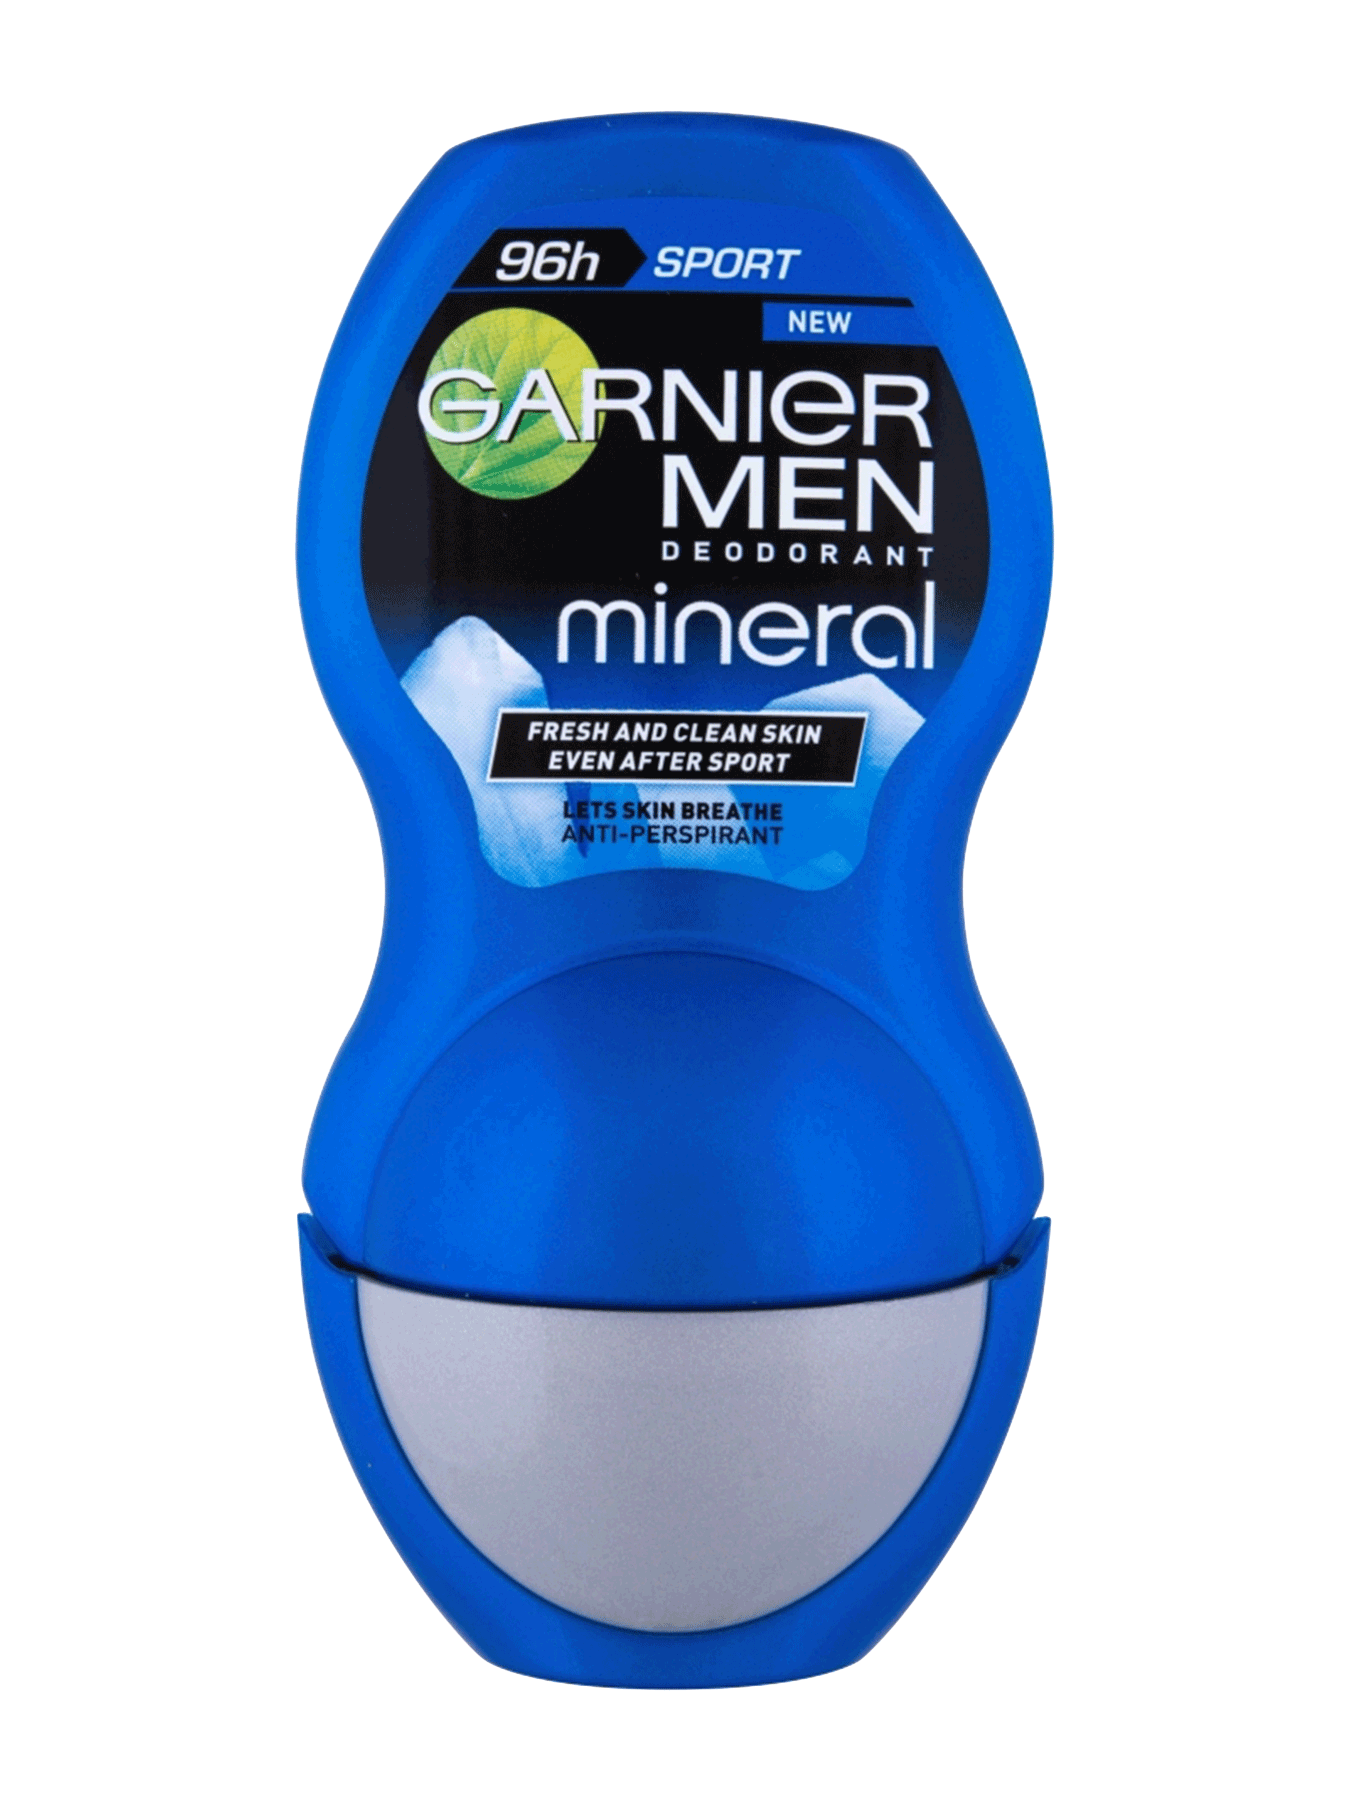 Garnier Mineral Deo Men Sport 96h antiperspirant Roll-on 